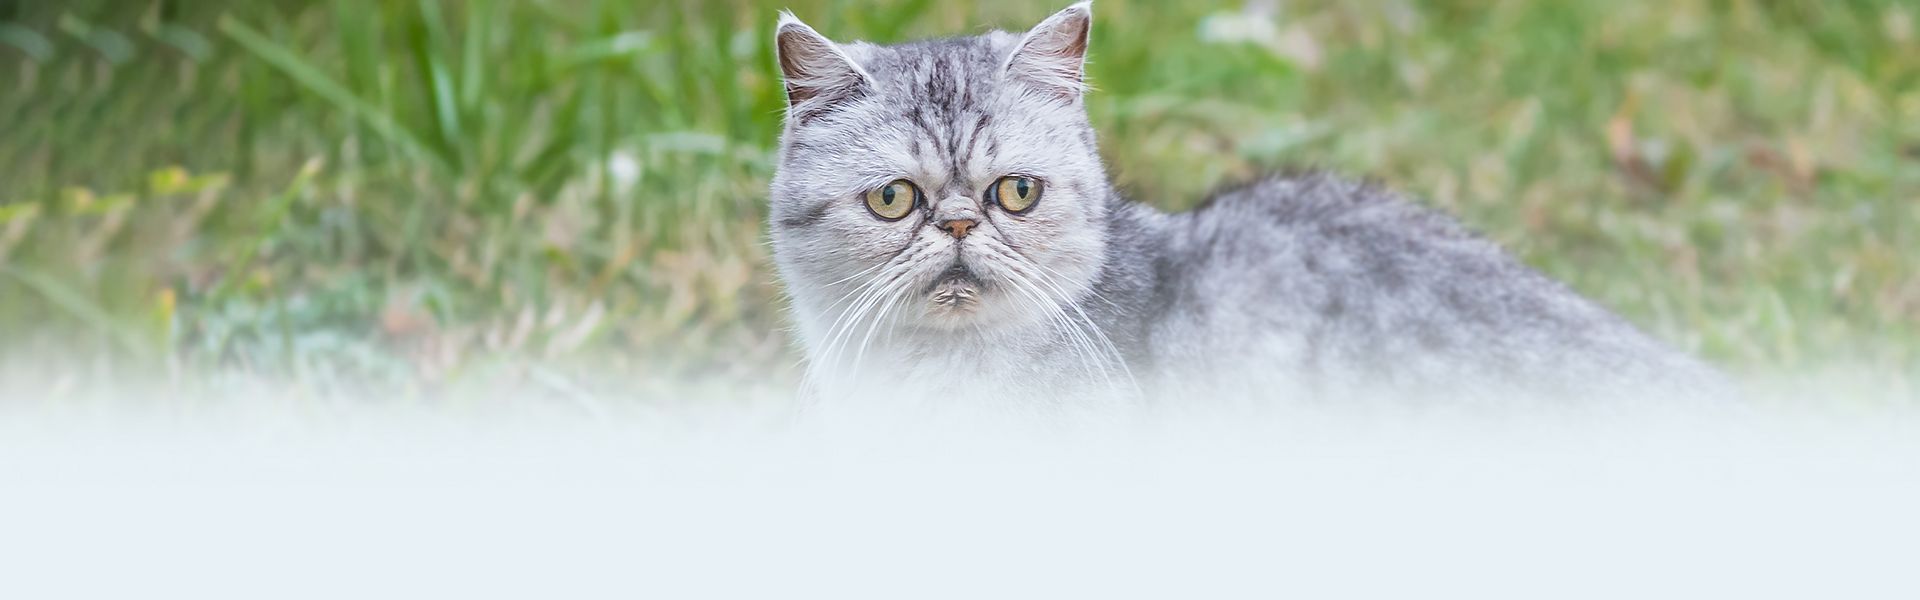 gray shorthair cat among green grass